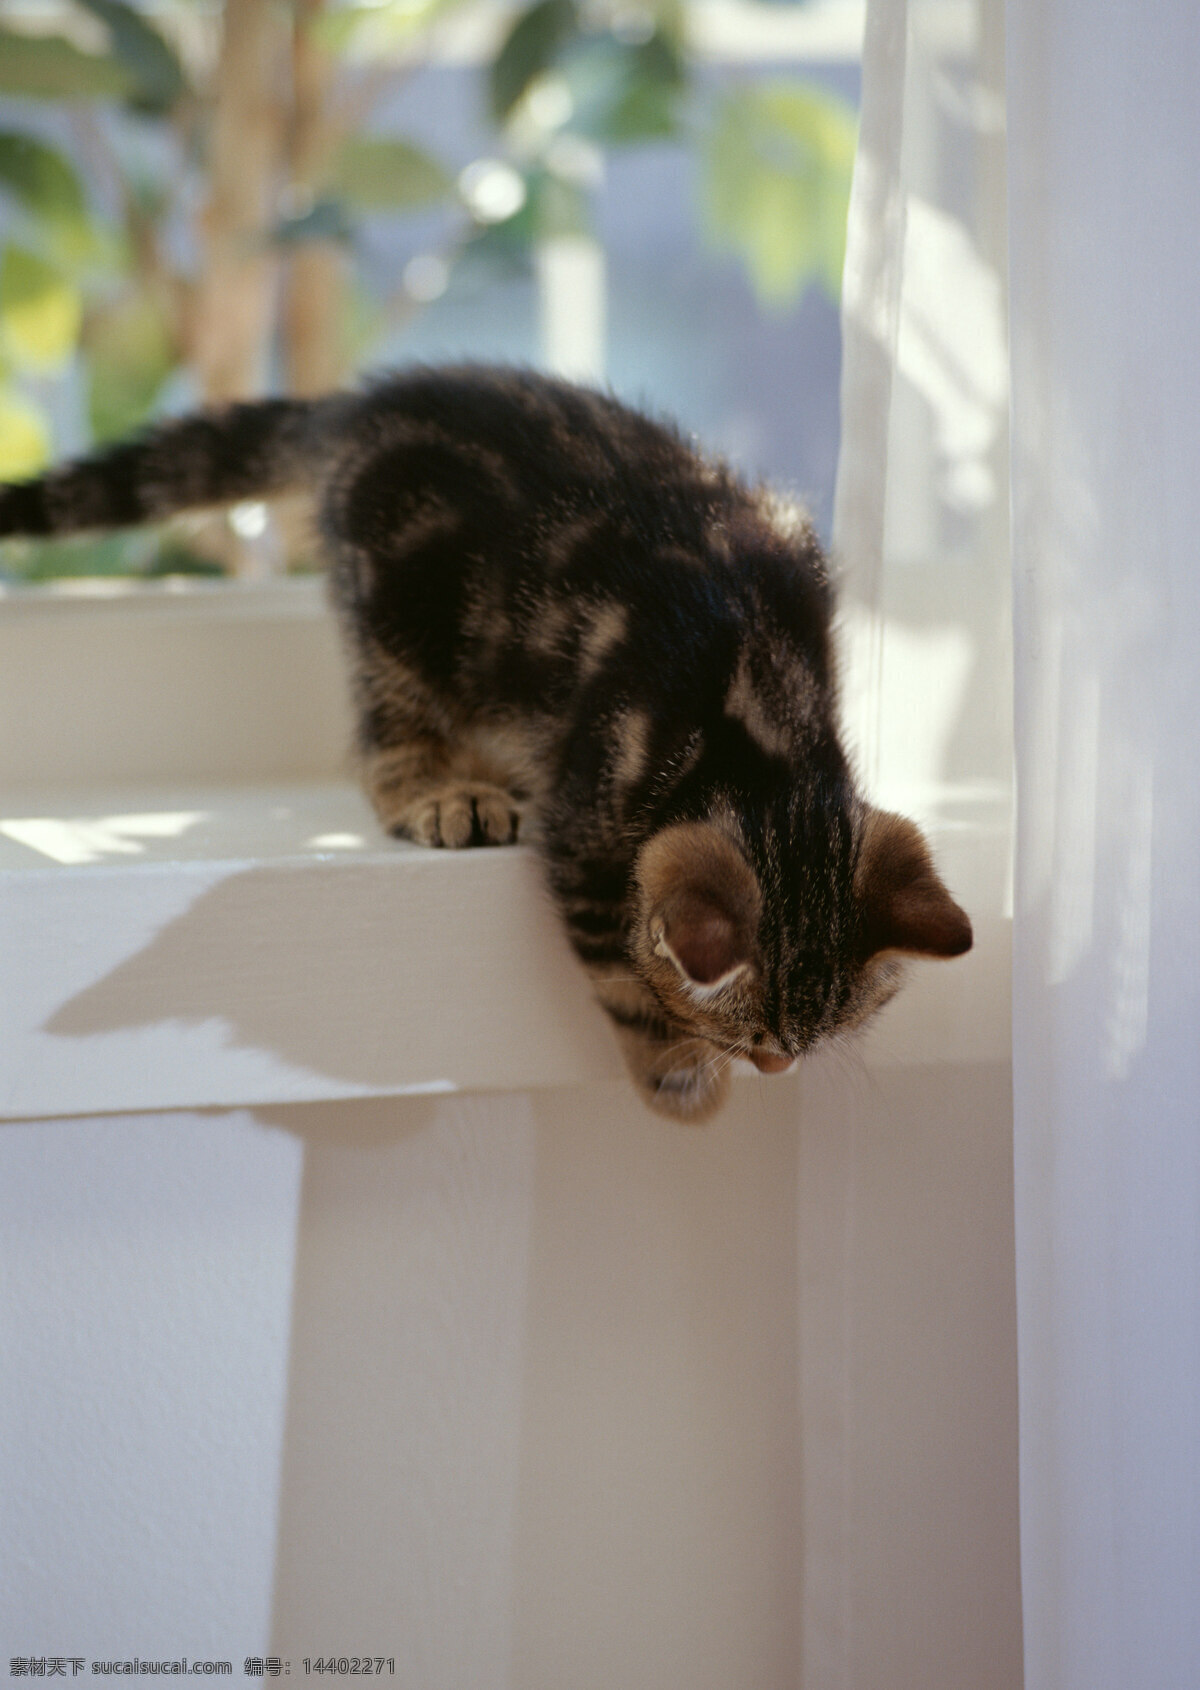 准备 窗台 上 跳 下 猫 小猫 动物摄影 宠物 可爱的猫 家猫 猫咪 小猫图片 家禽家畜 生物世界 猫咪图片